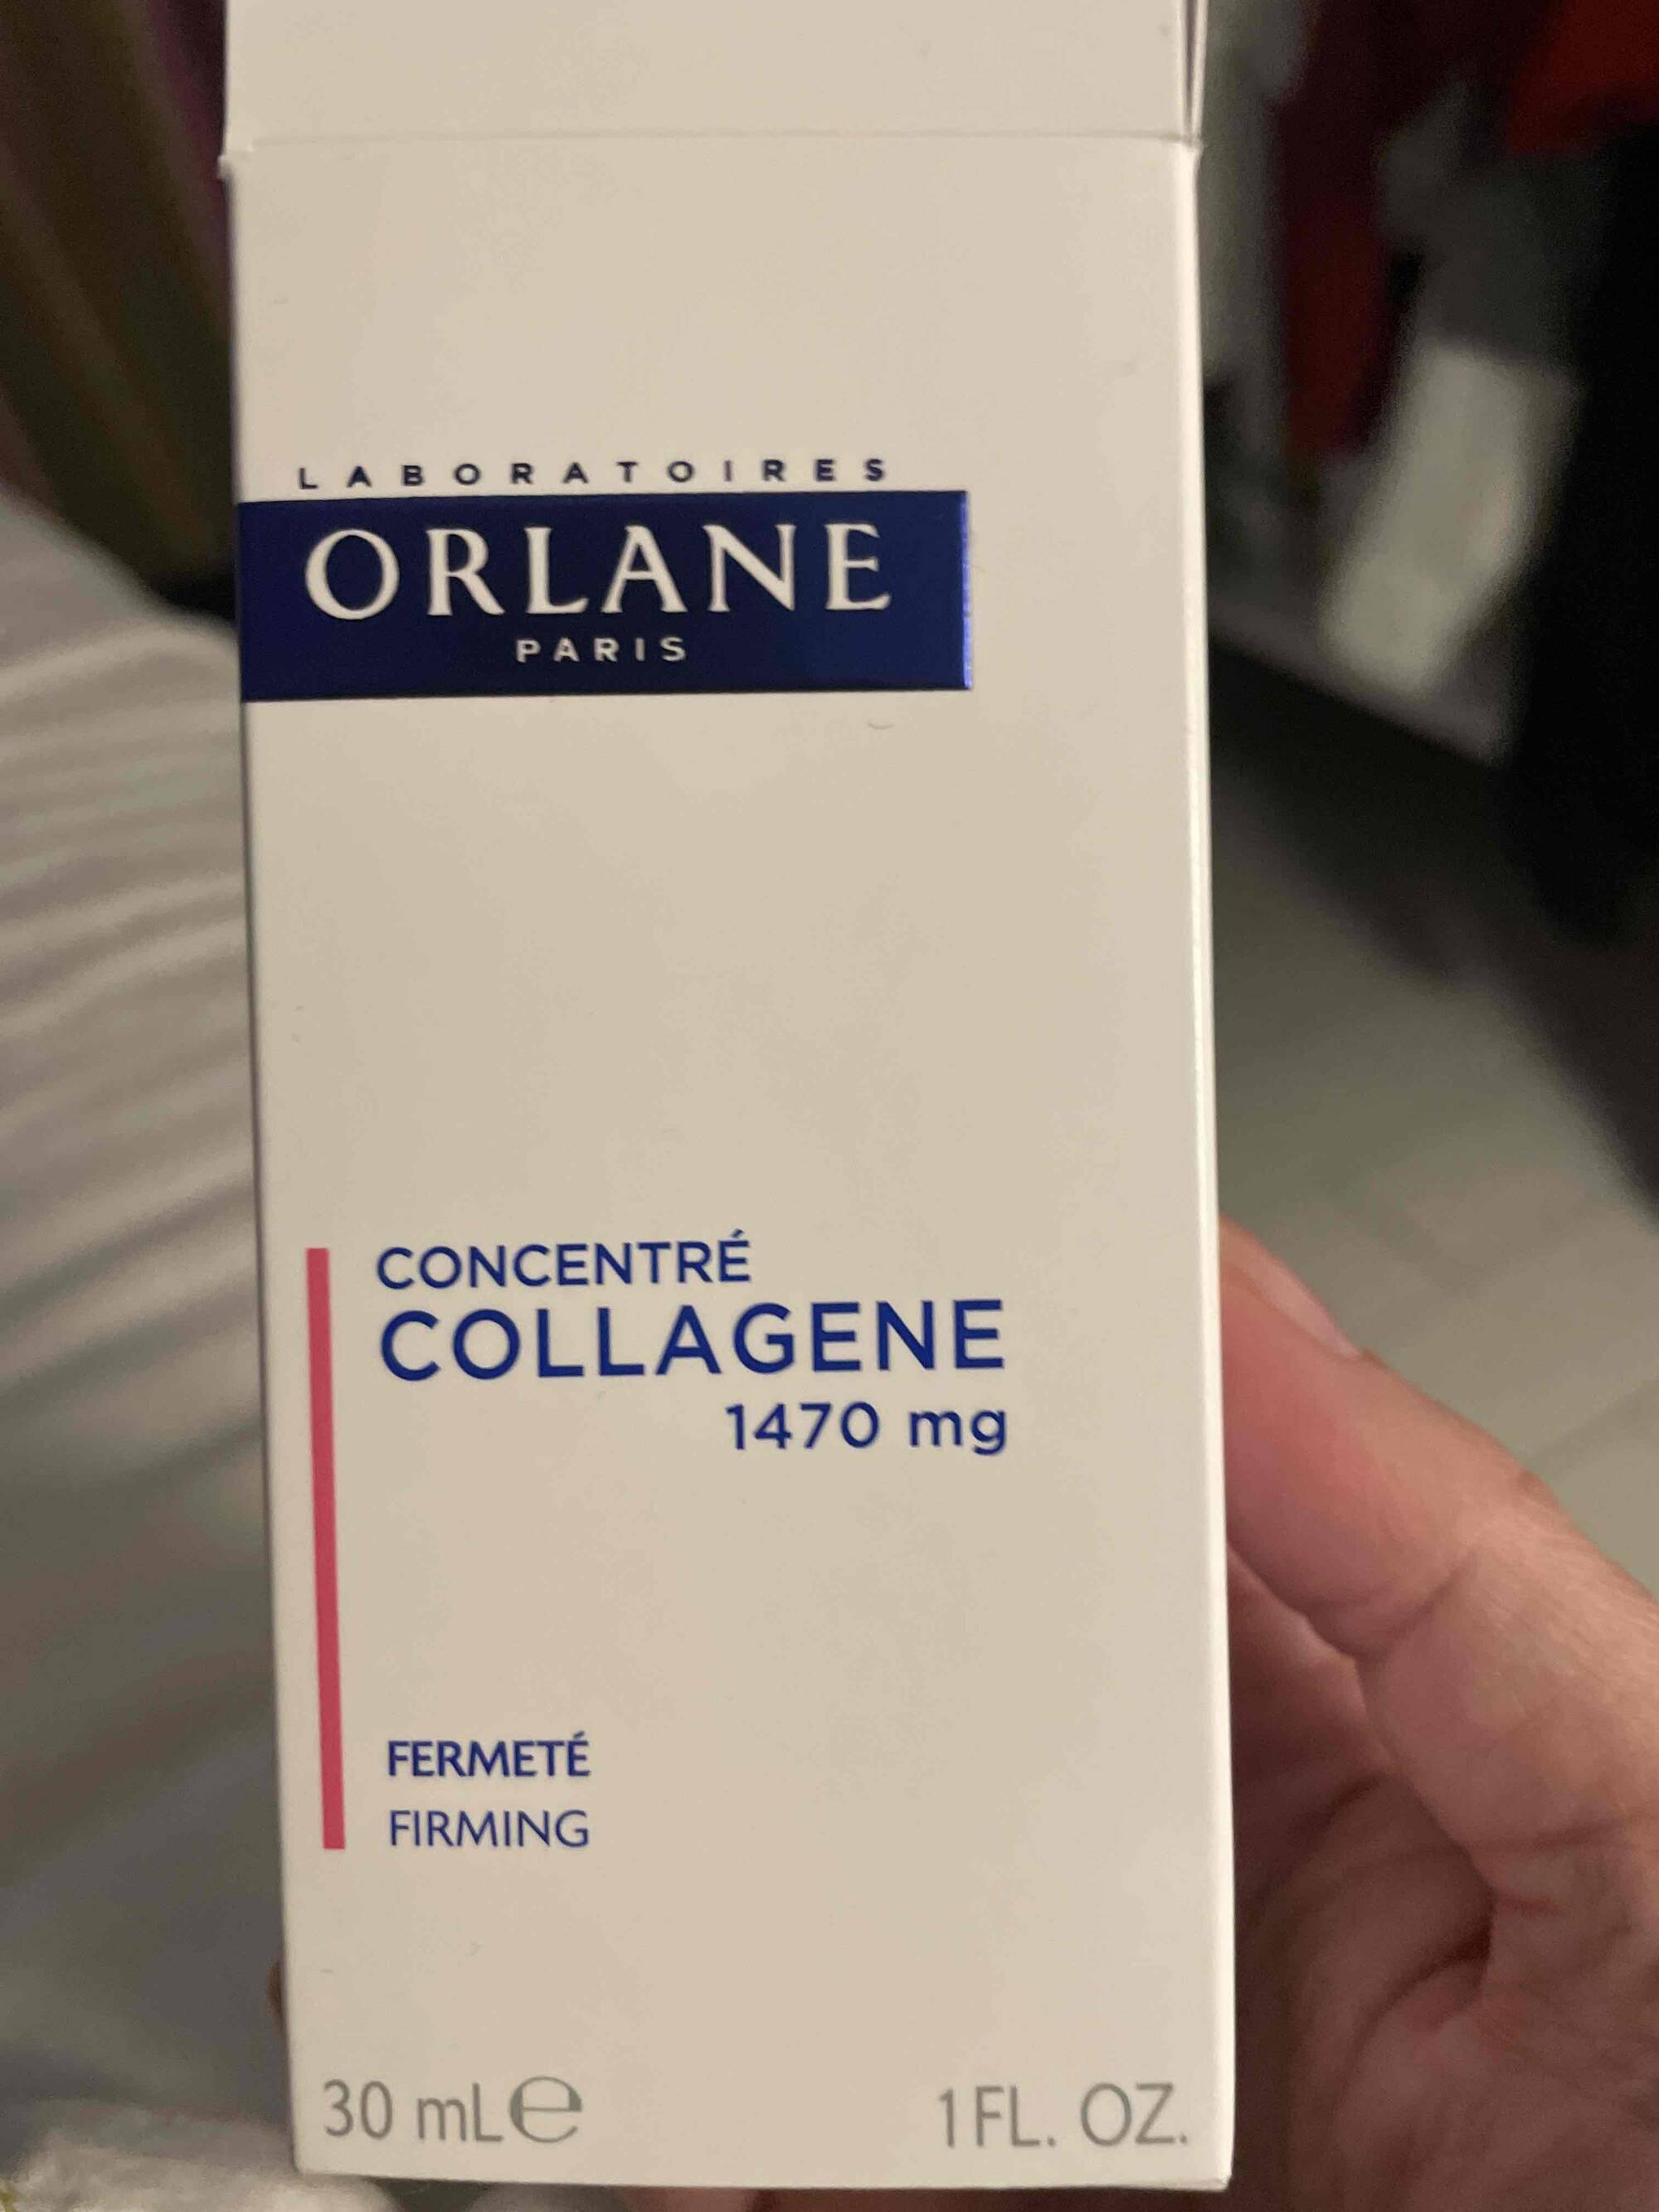 ORLANE - Concentré collagene fermeté 1470 mg